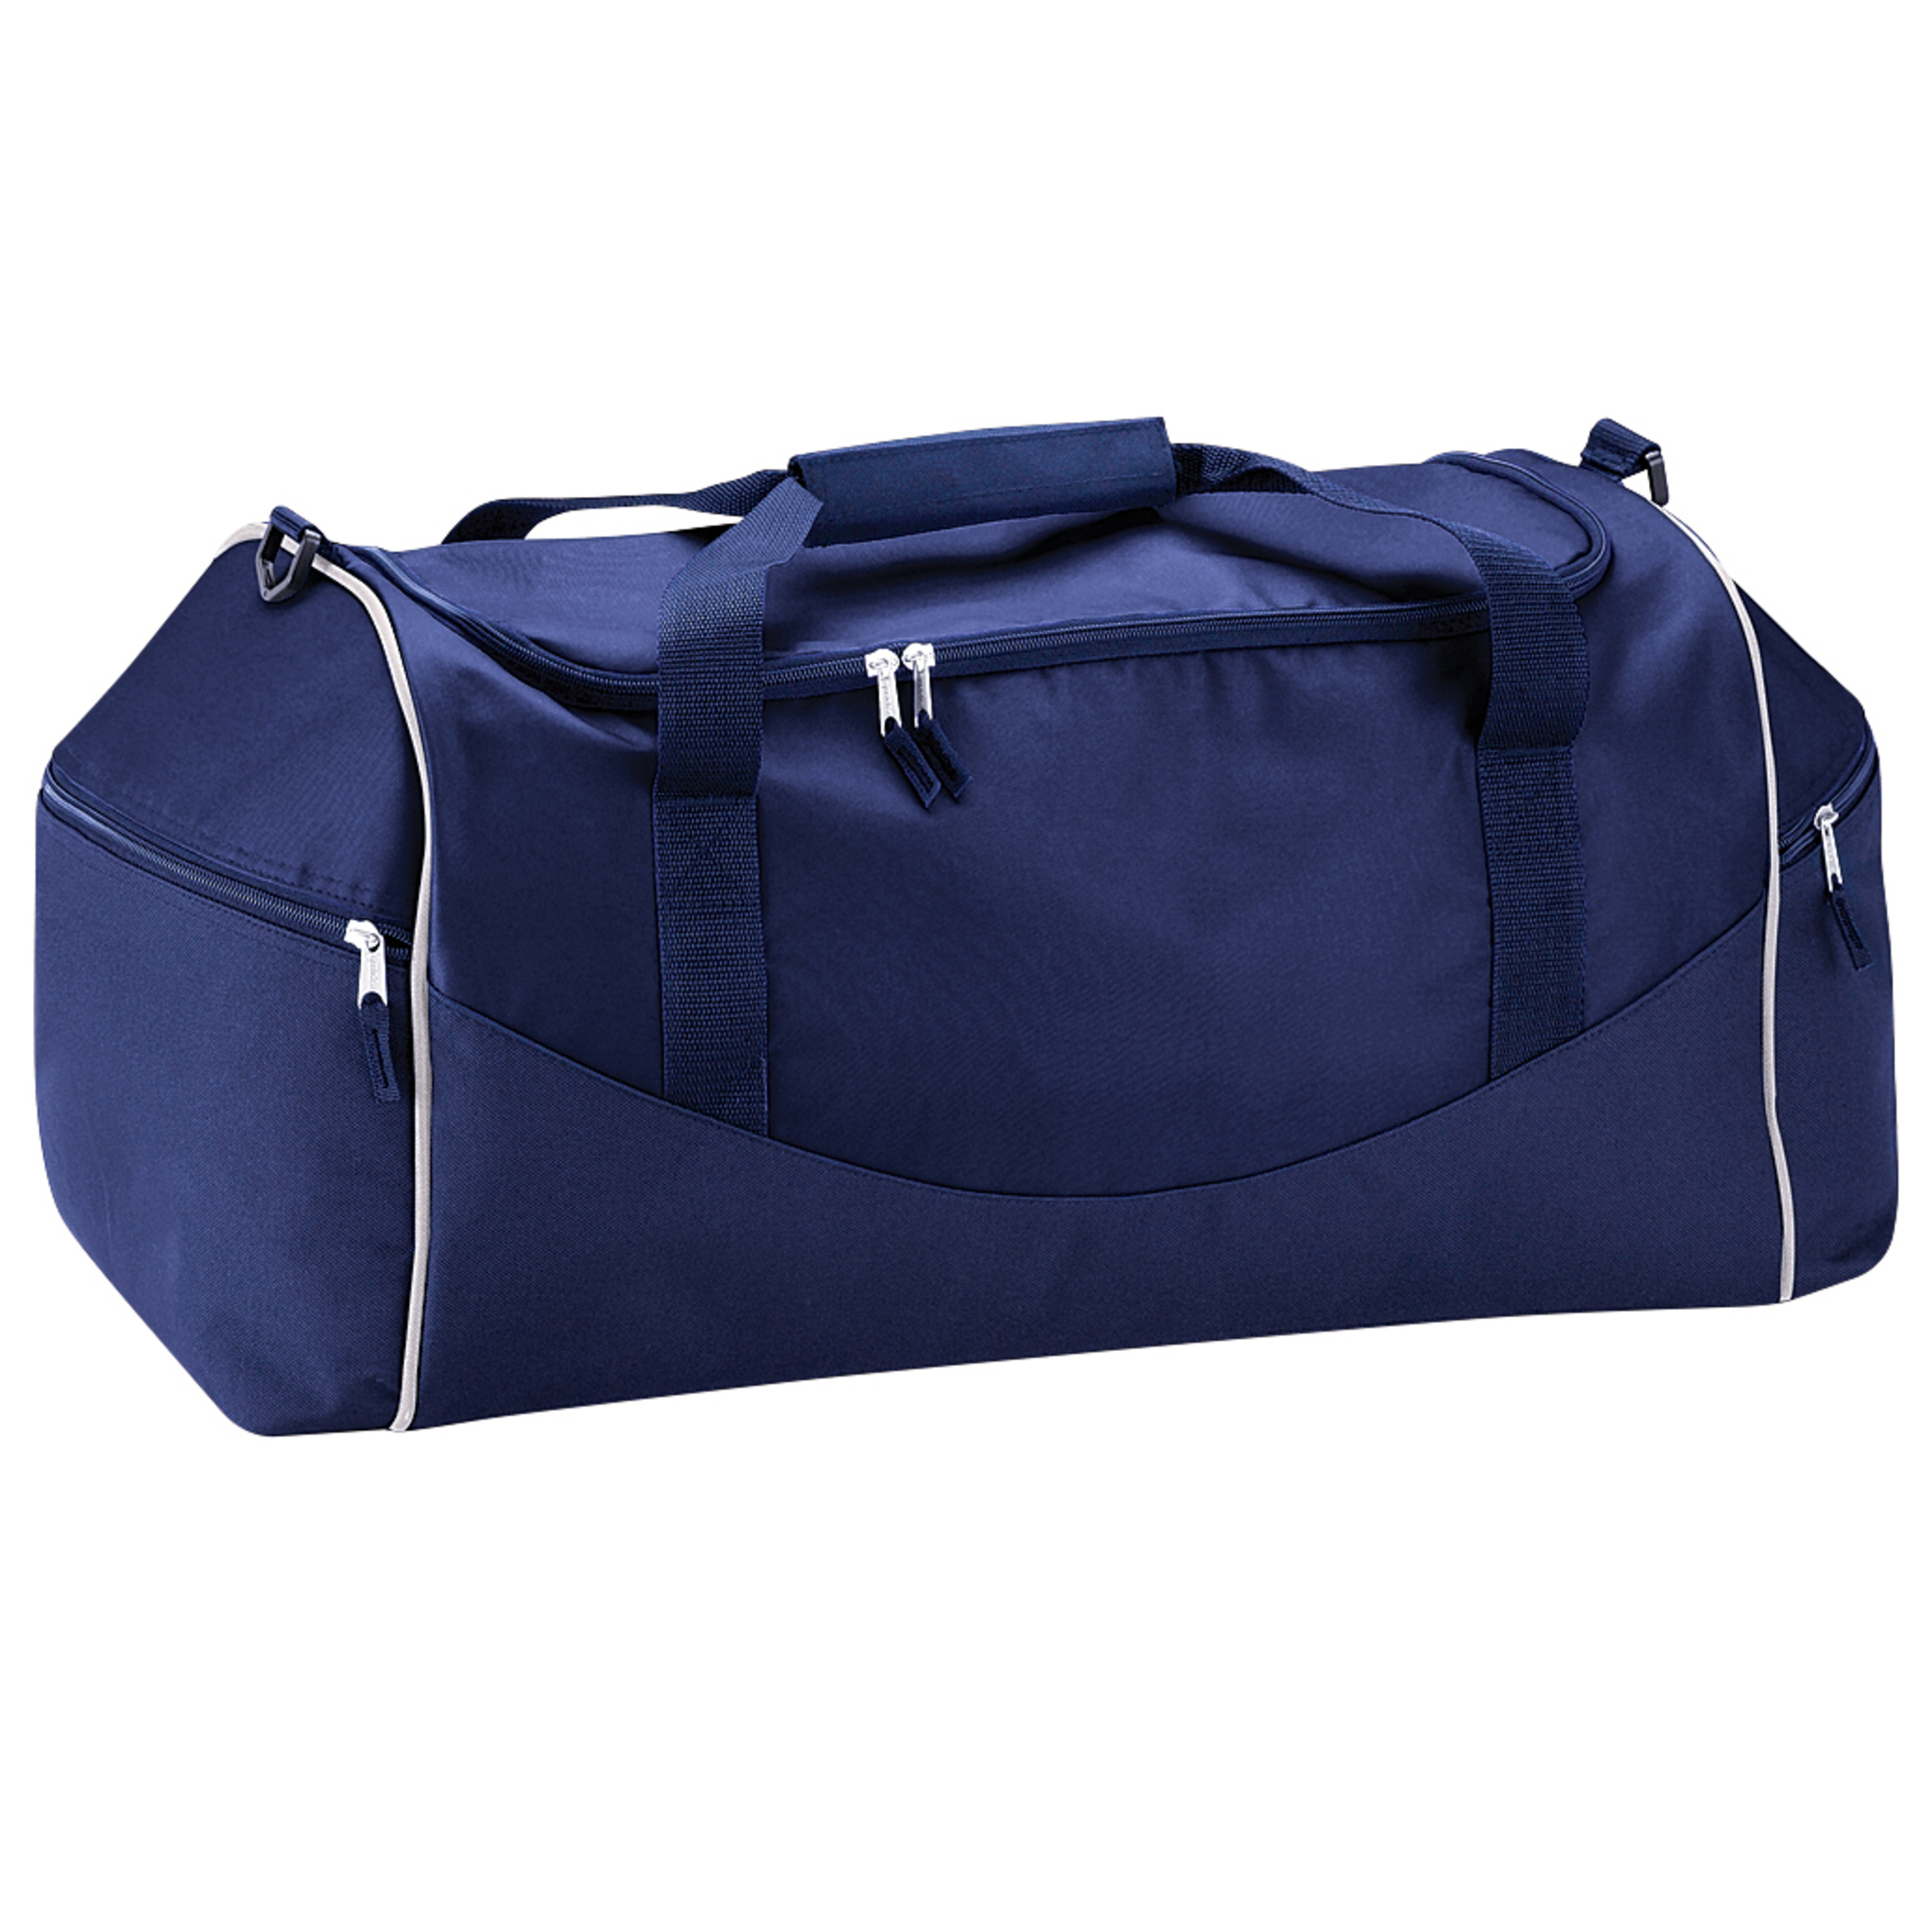 Bolsa De Deporte / Viaje Modelo Teamwear 55 Litros (paquete De 2) Quadra - azul-marino - 